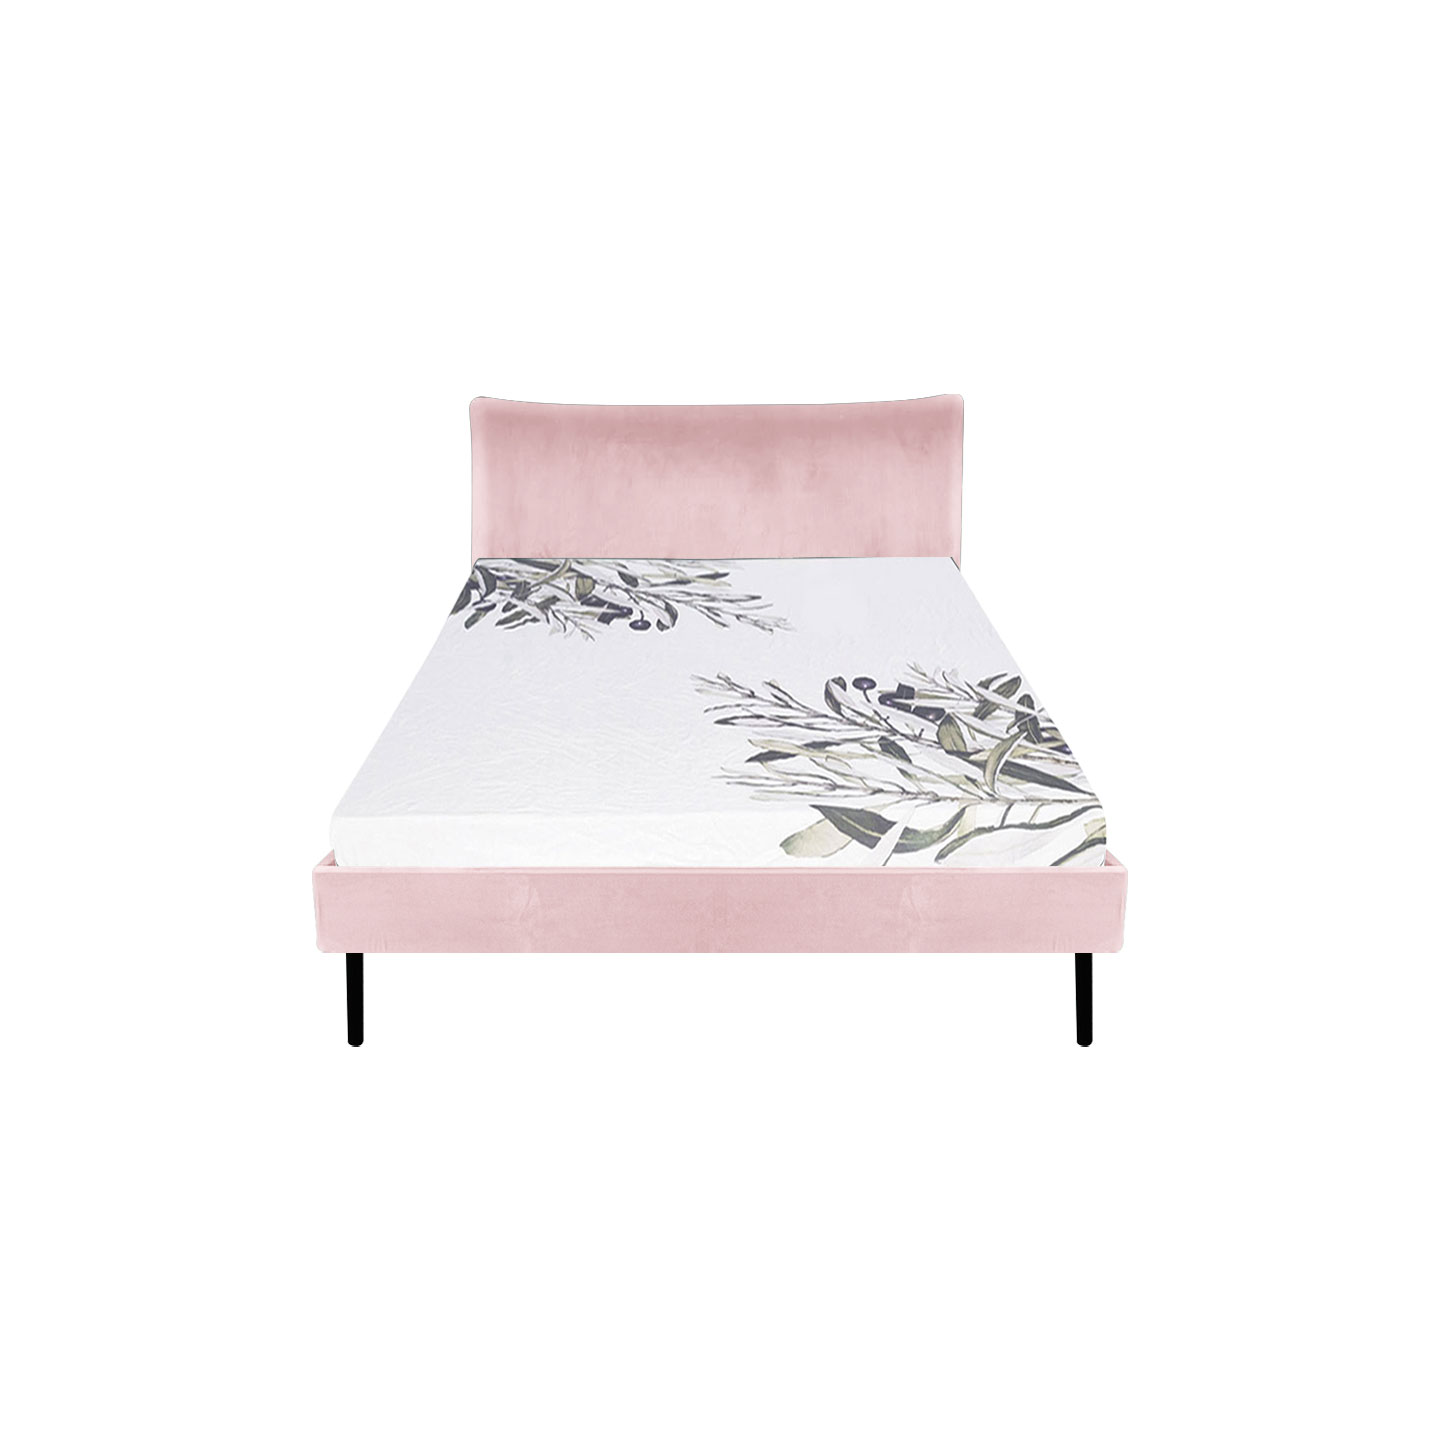 Dessau  Single Bed